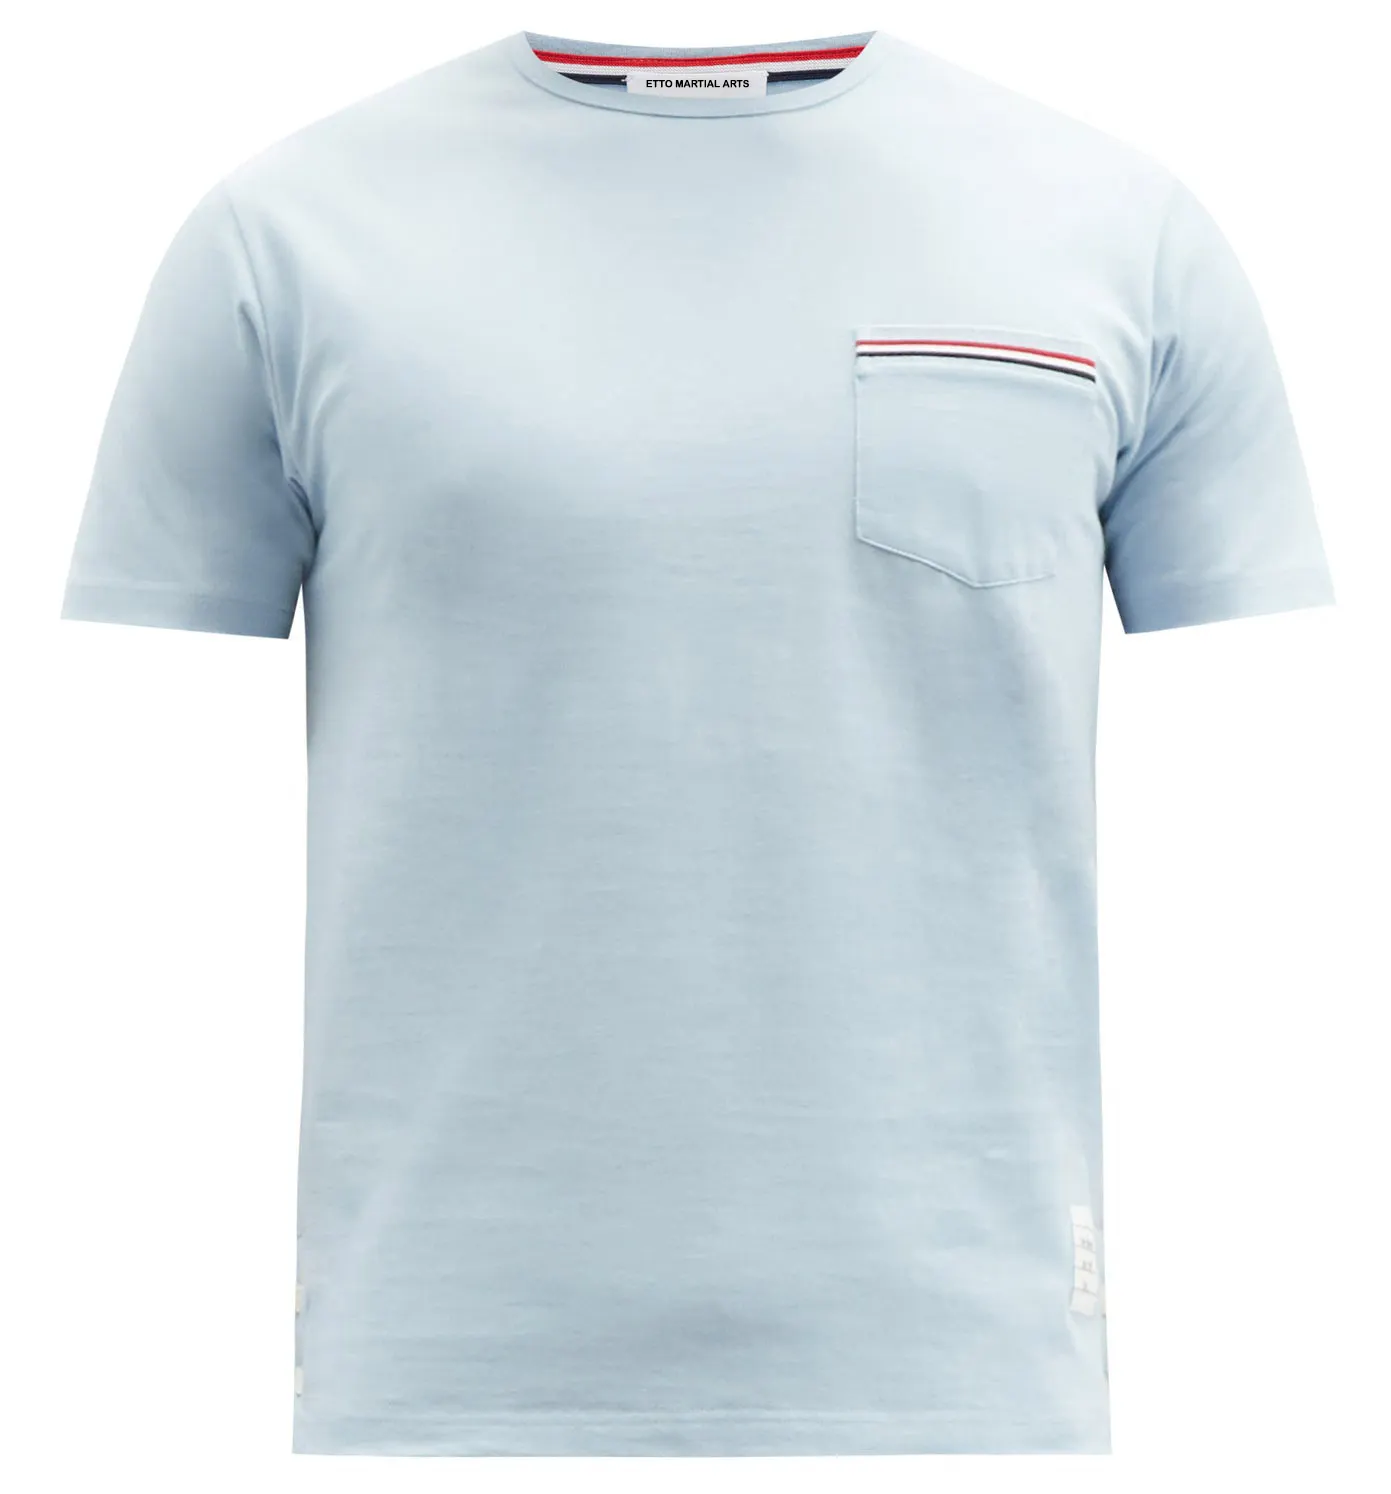 Camiseta masculina lisa de algodão, camiseta casual de alta qualidade para homens, impressão personalizada, 100% algodão, camisetas 2021, atacado, azul claro